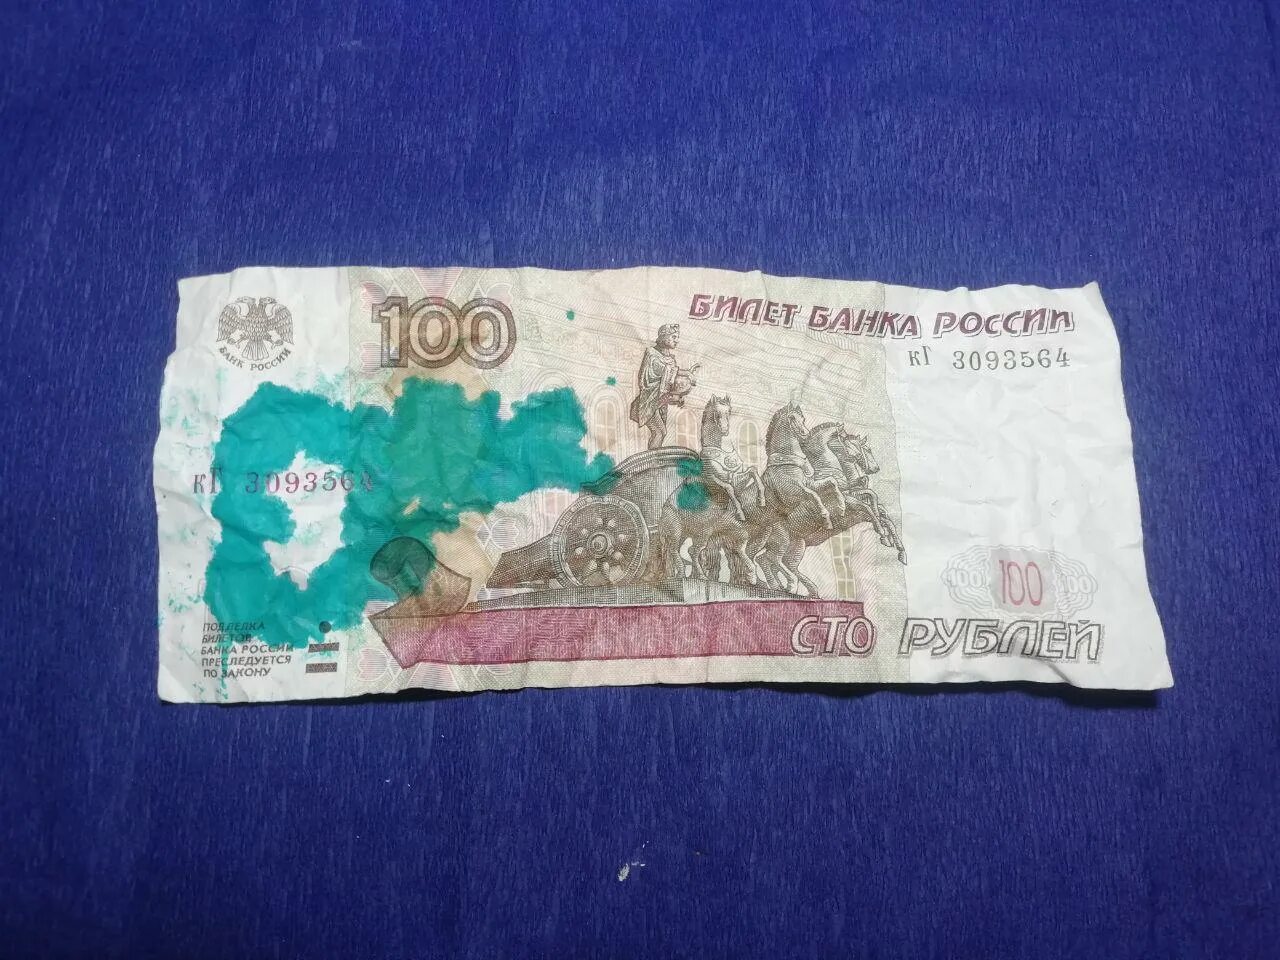 Грязная купюра. Загрязненные банкноты. Грязные банкноты. Gromov грязные банкноты. Какая самая грязная купюра.